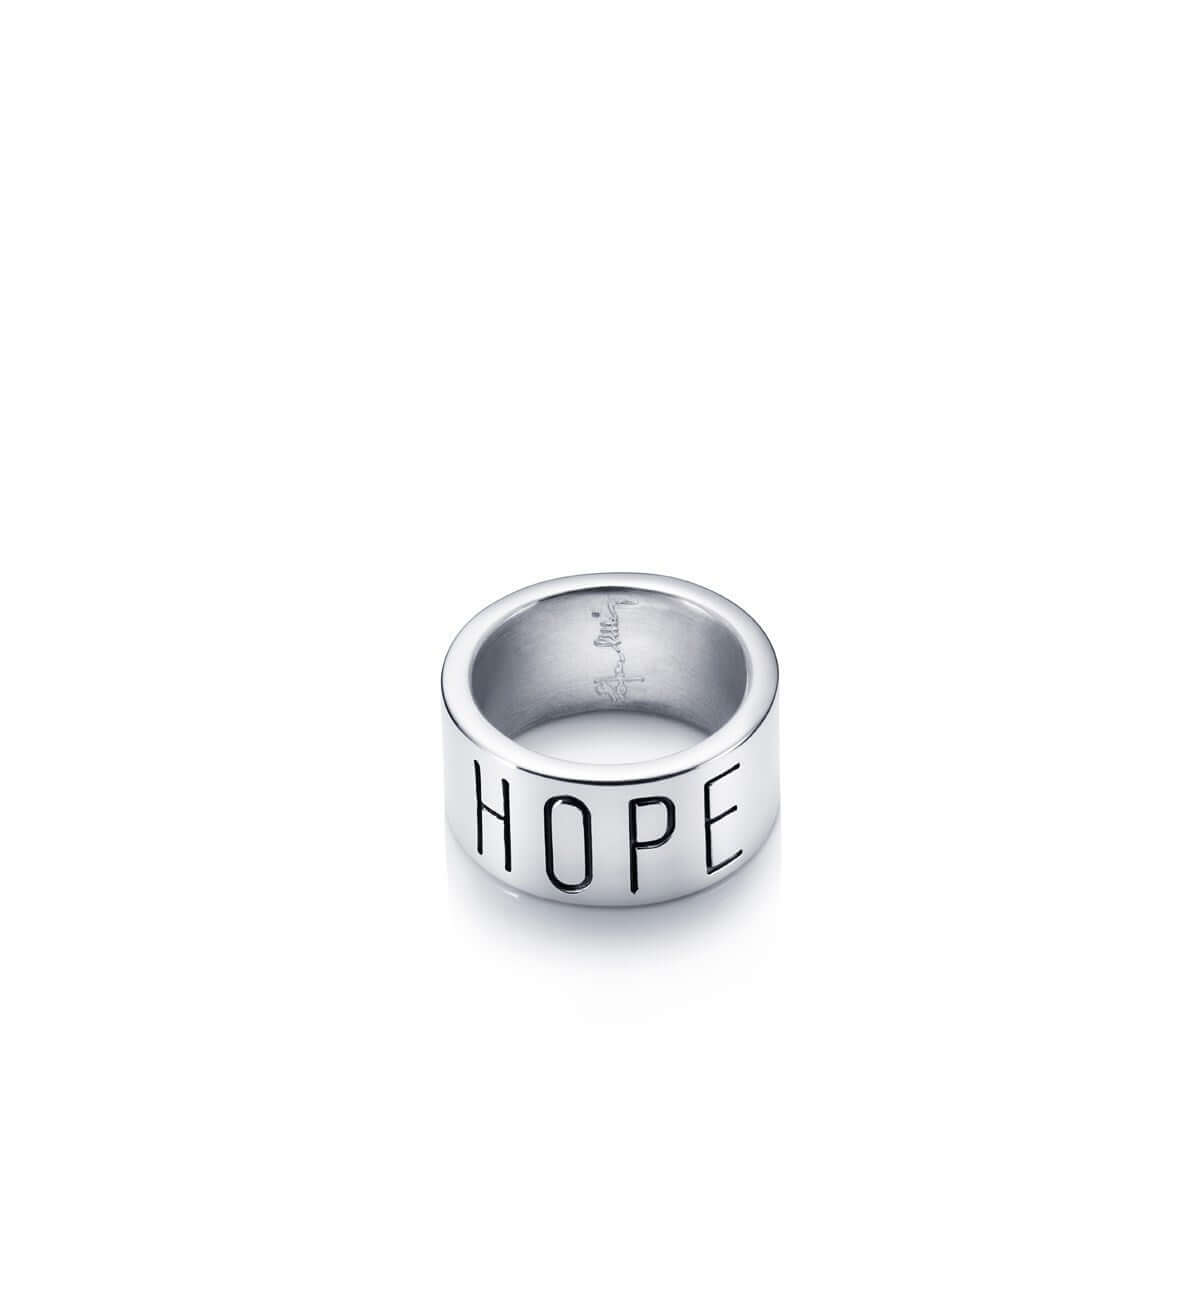 Efva Attling Hope ring